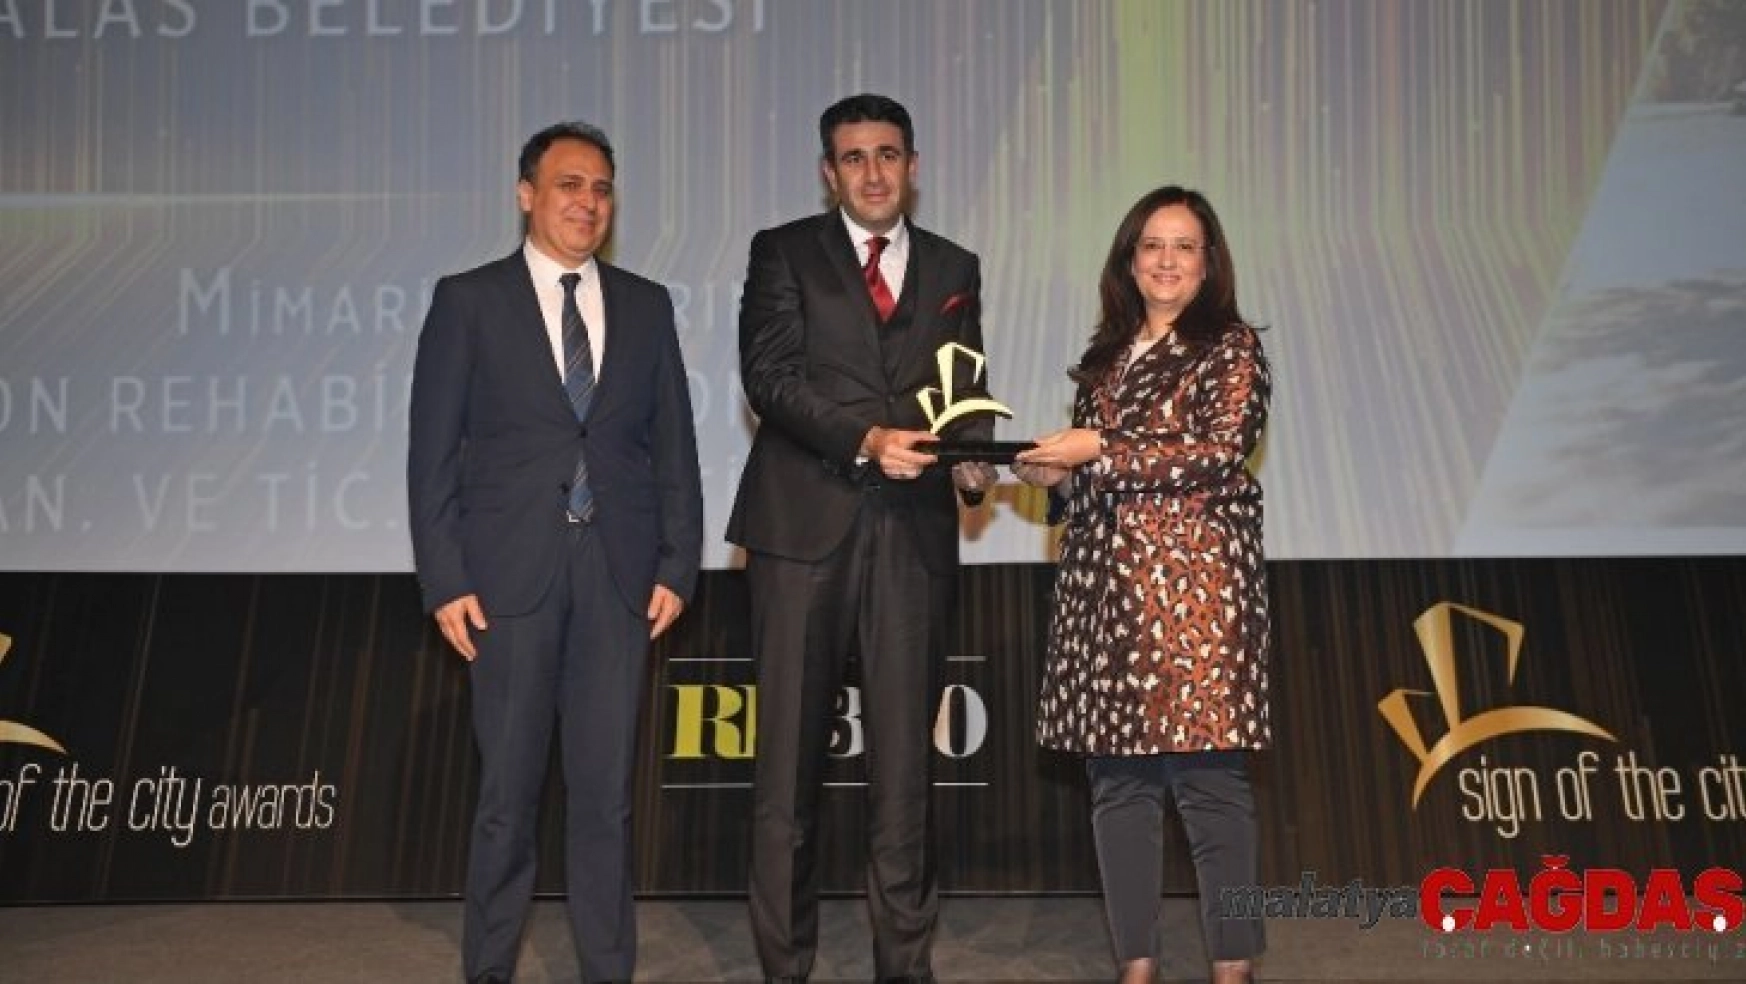 Talas Belediyesi'ne Bir Ödül Daha